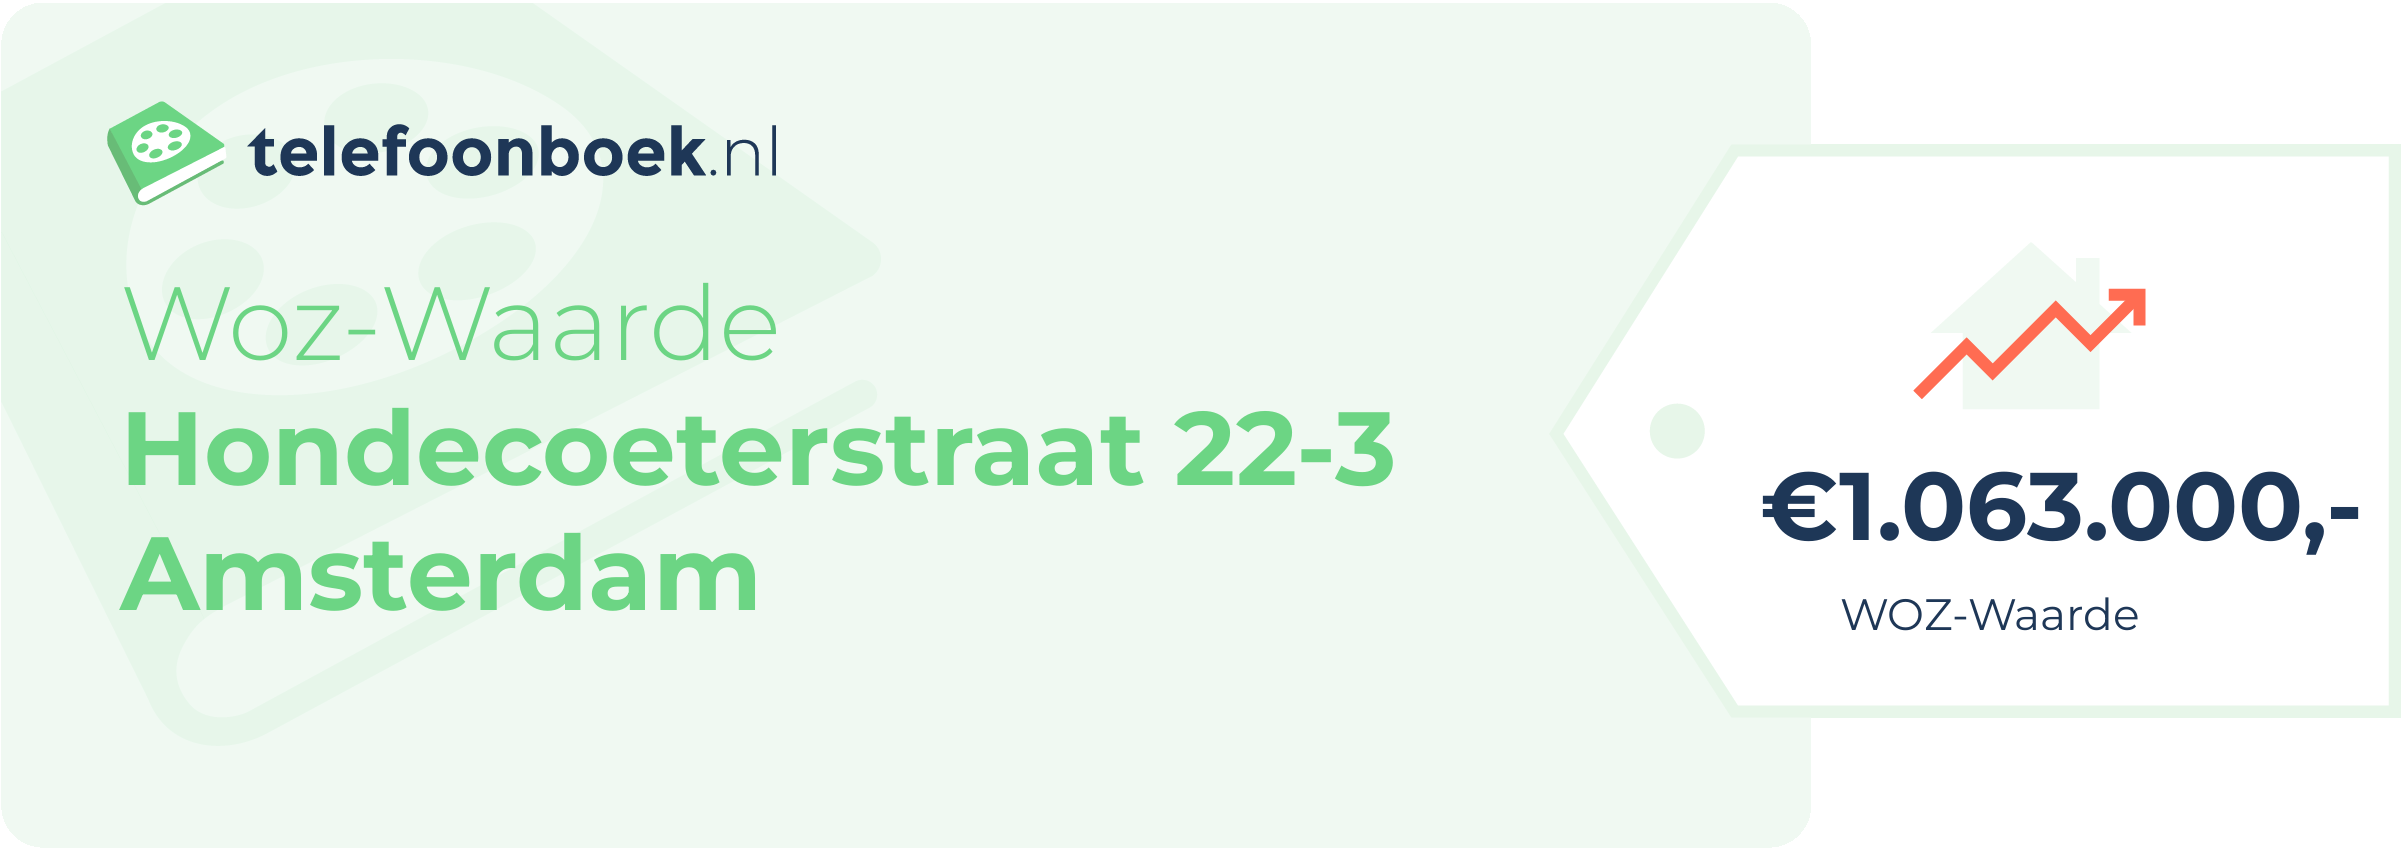 WOZ-waarde Hondecoeterstraat 22-3 Amsterdam